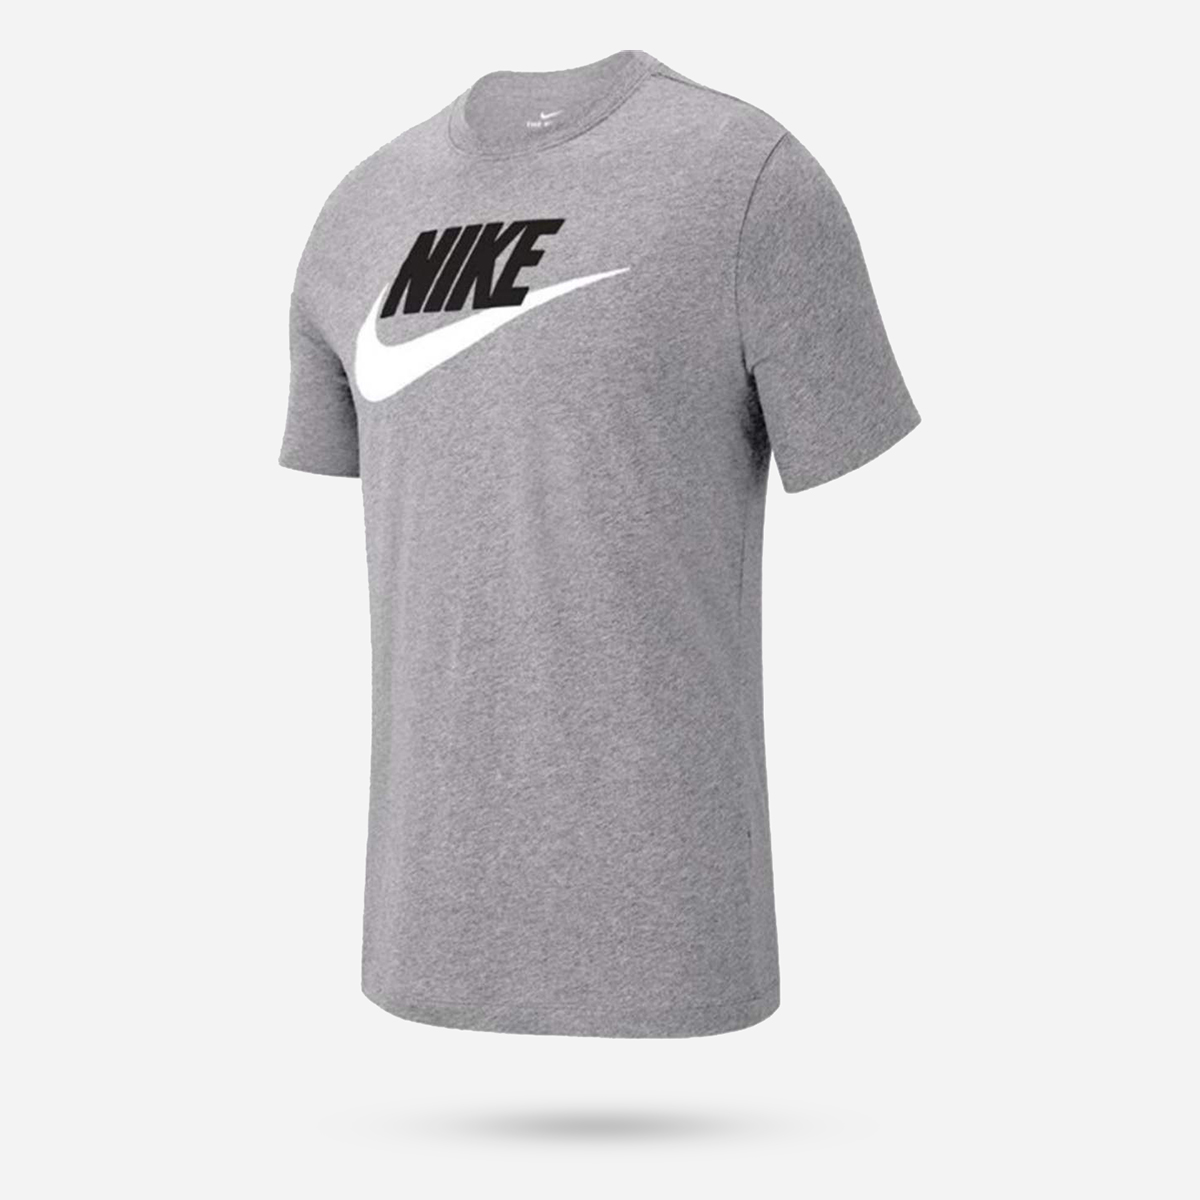 AN264161 Sportswear Mens T-shirt